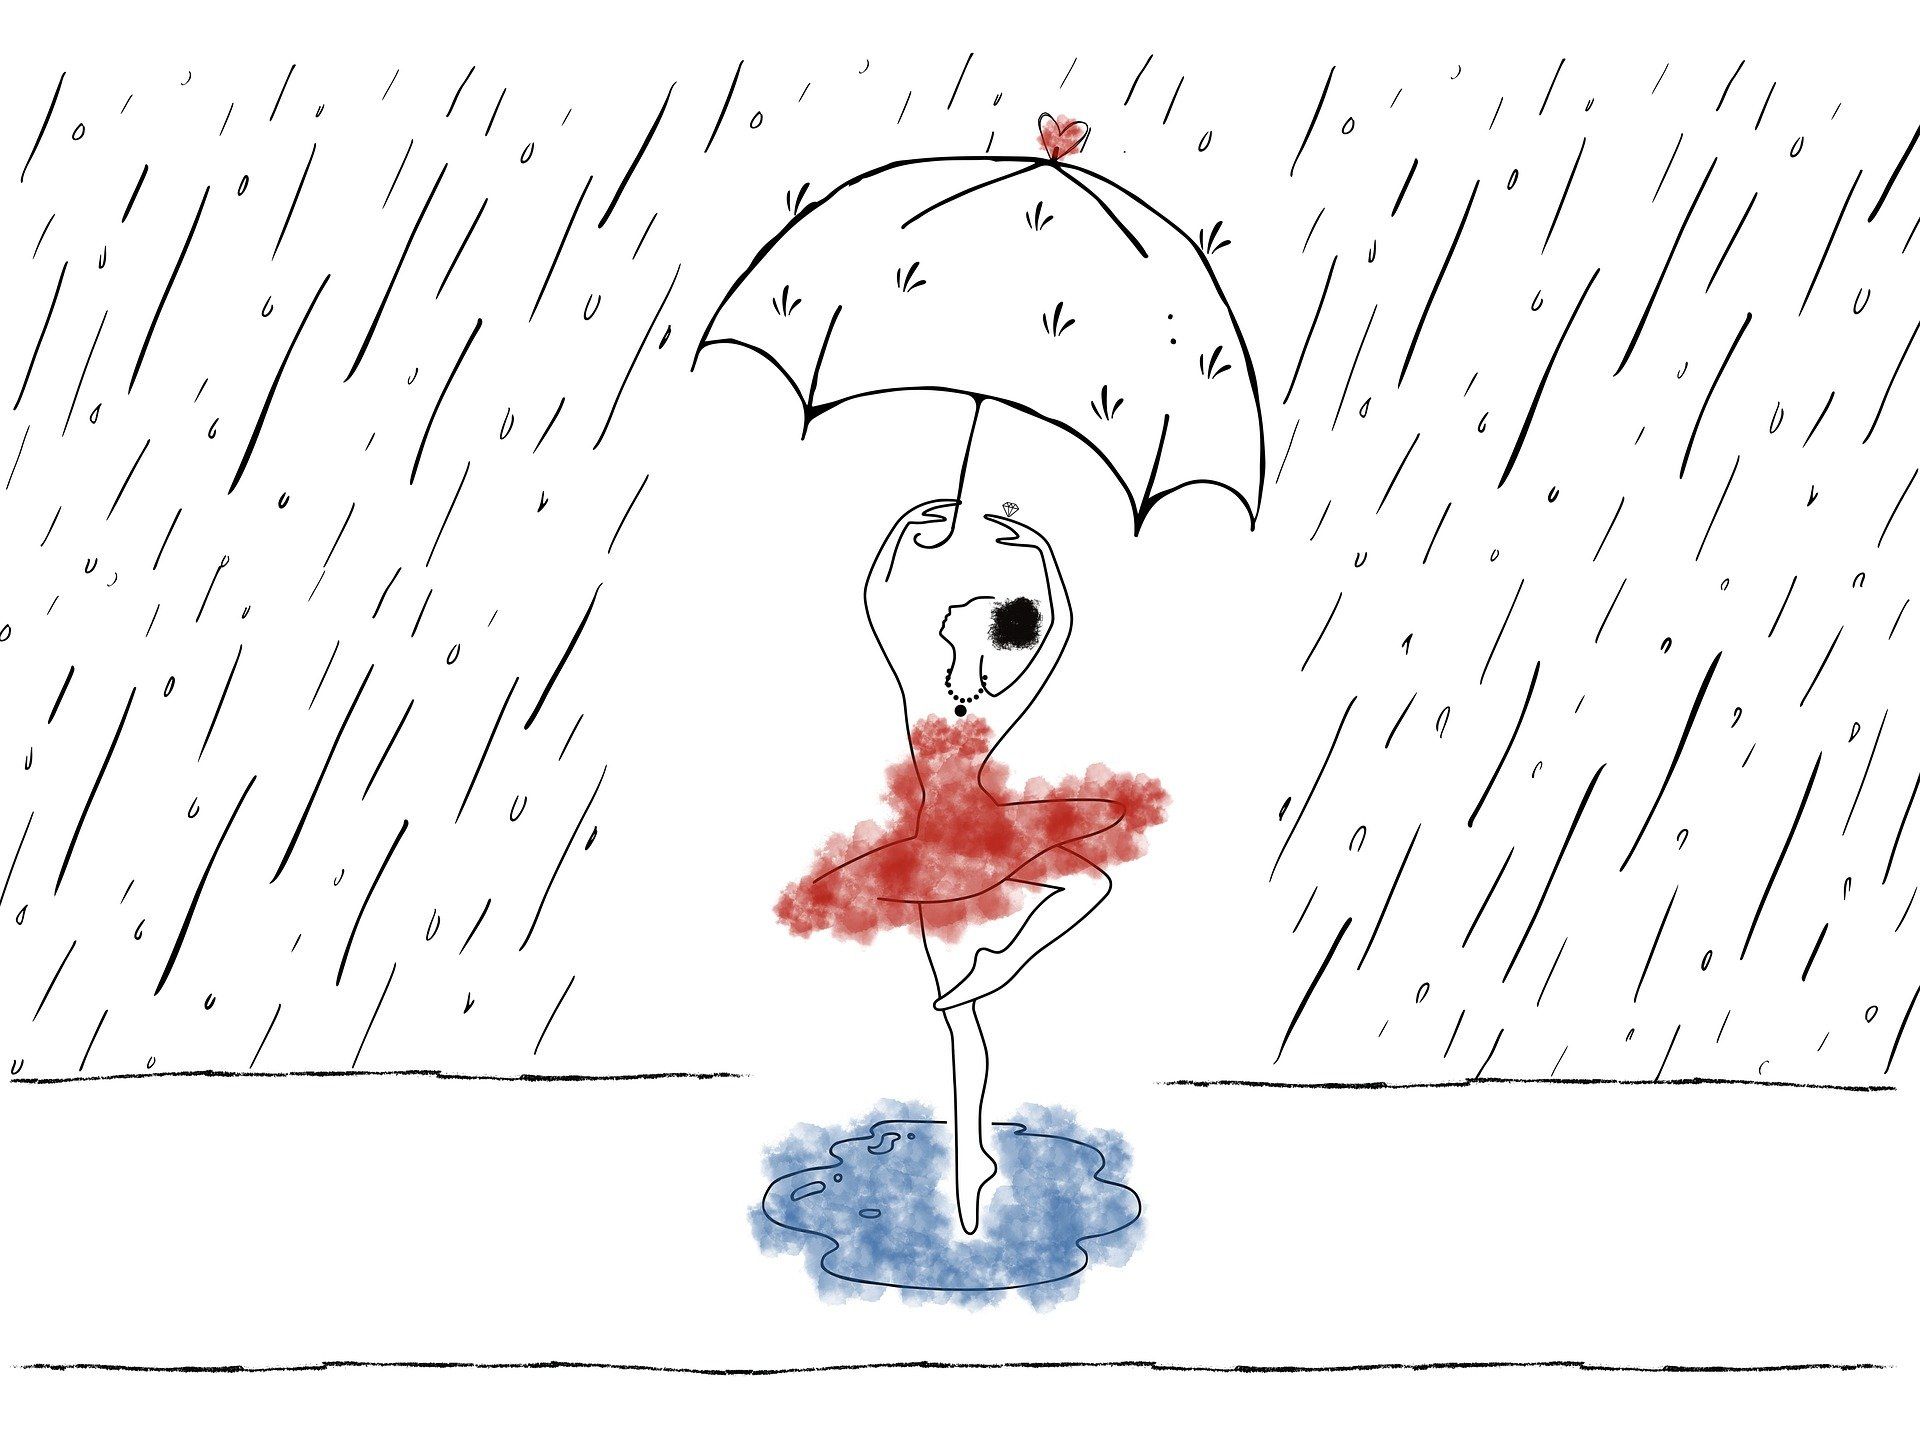 Eine Frau tanzt im Regen - Sinnbild für gesunde Anpassungsfähigkeit.